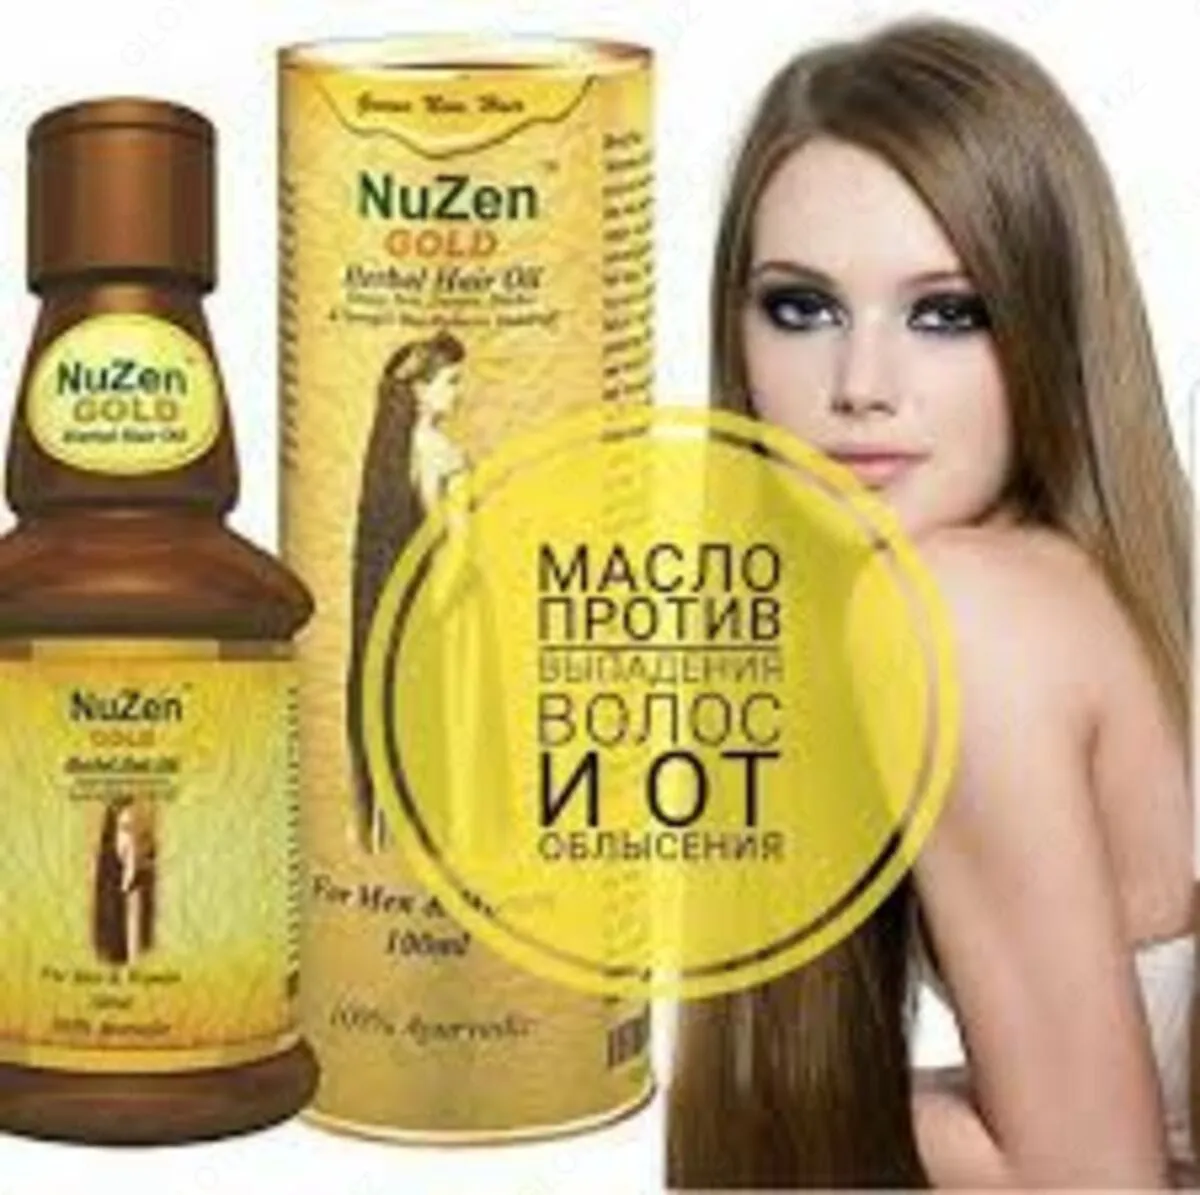 Лечебное травяное масло для роста волос Nuzen gold oil#3